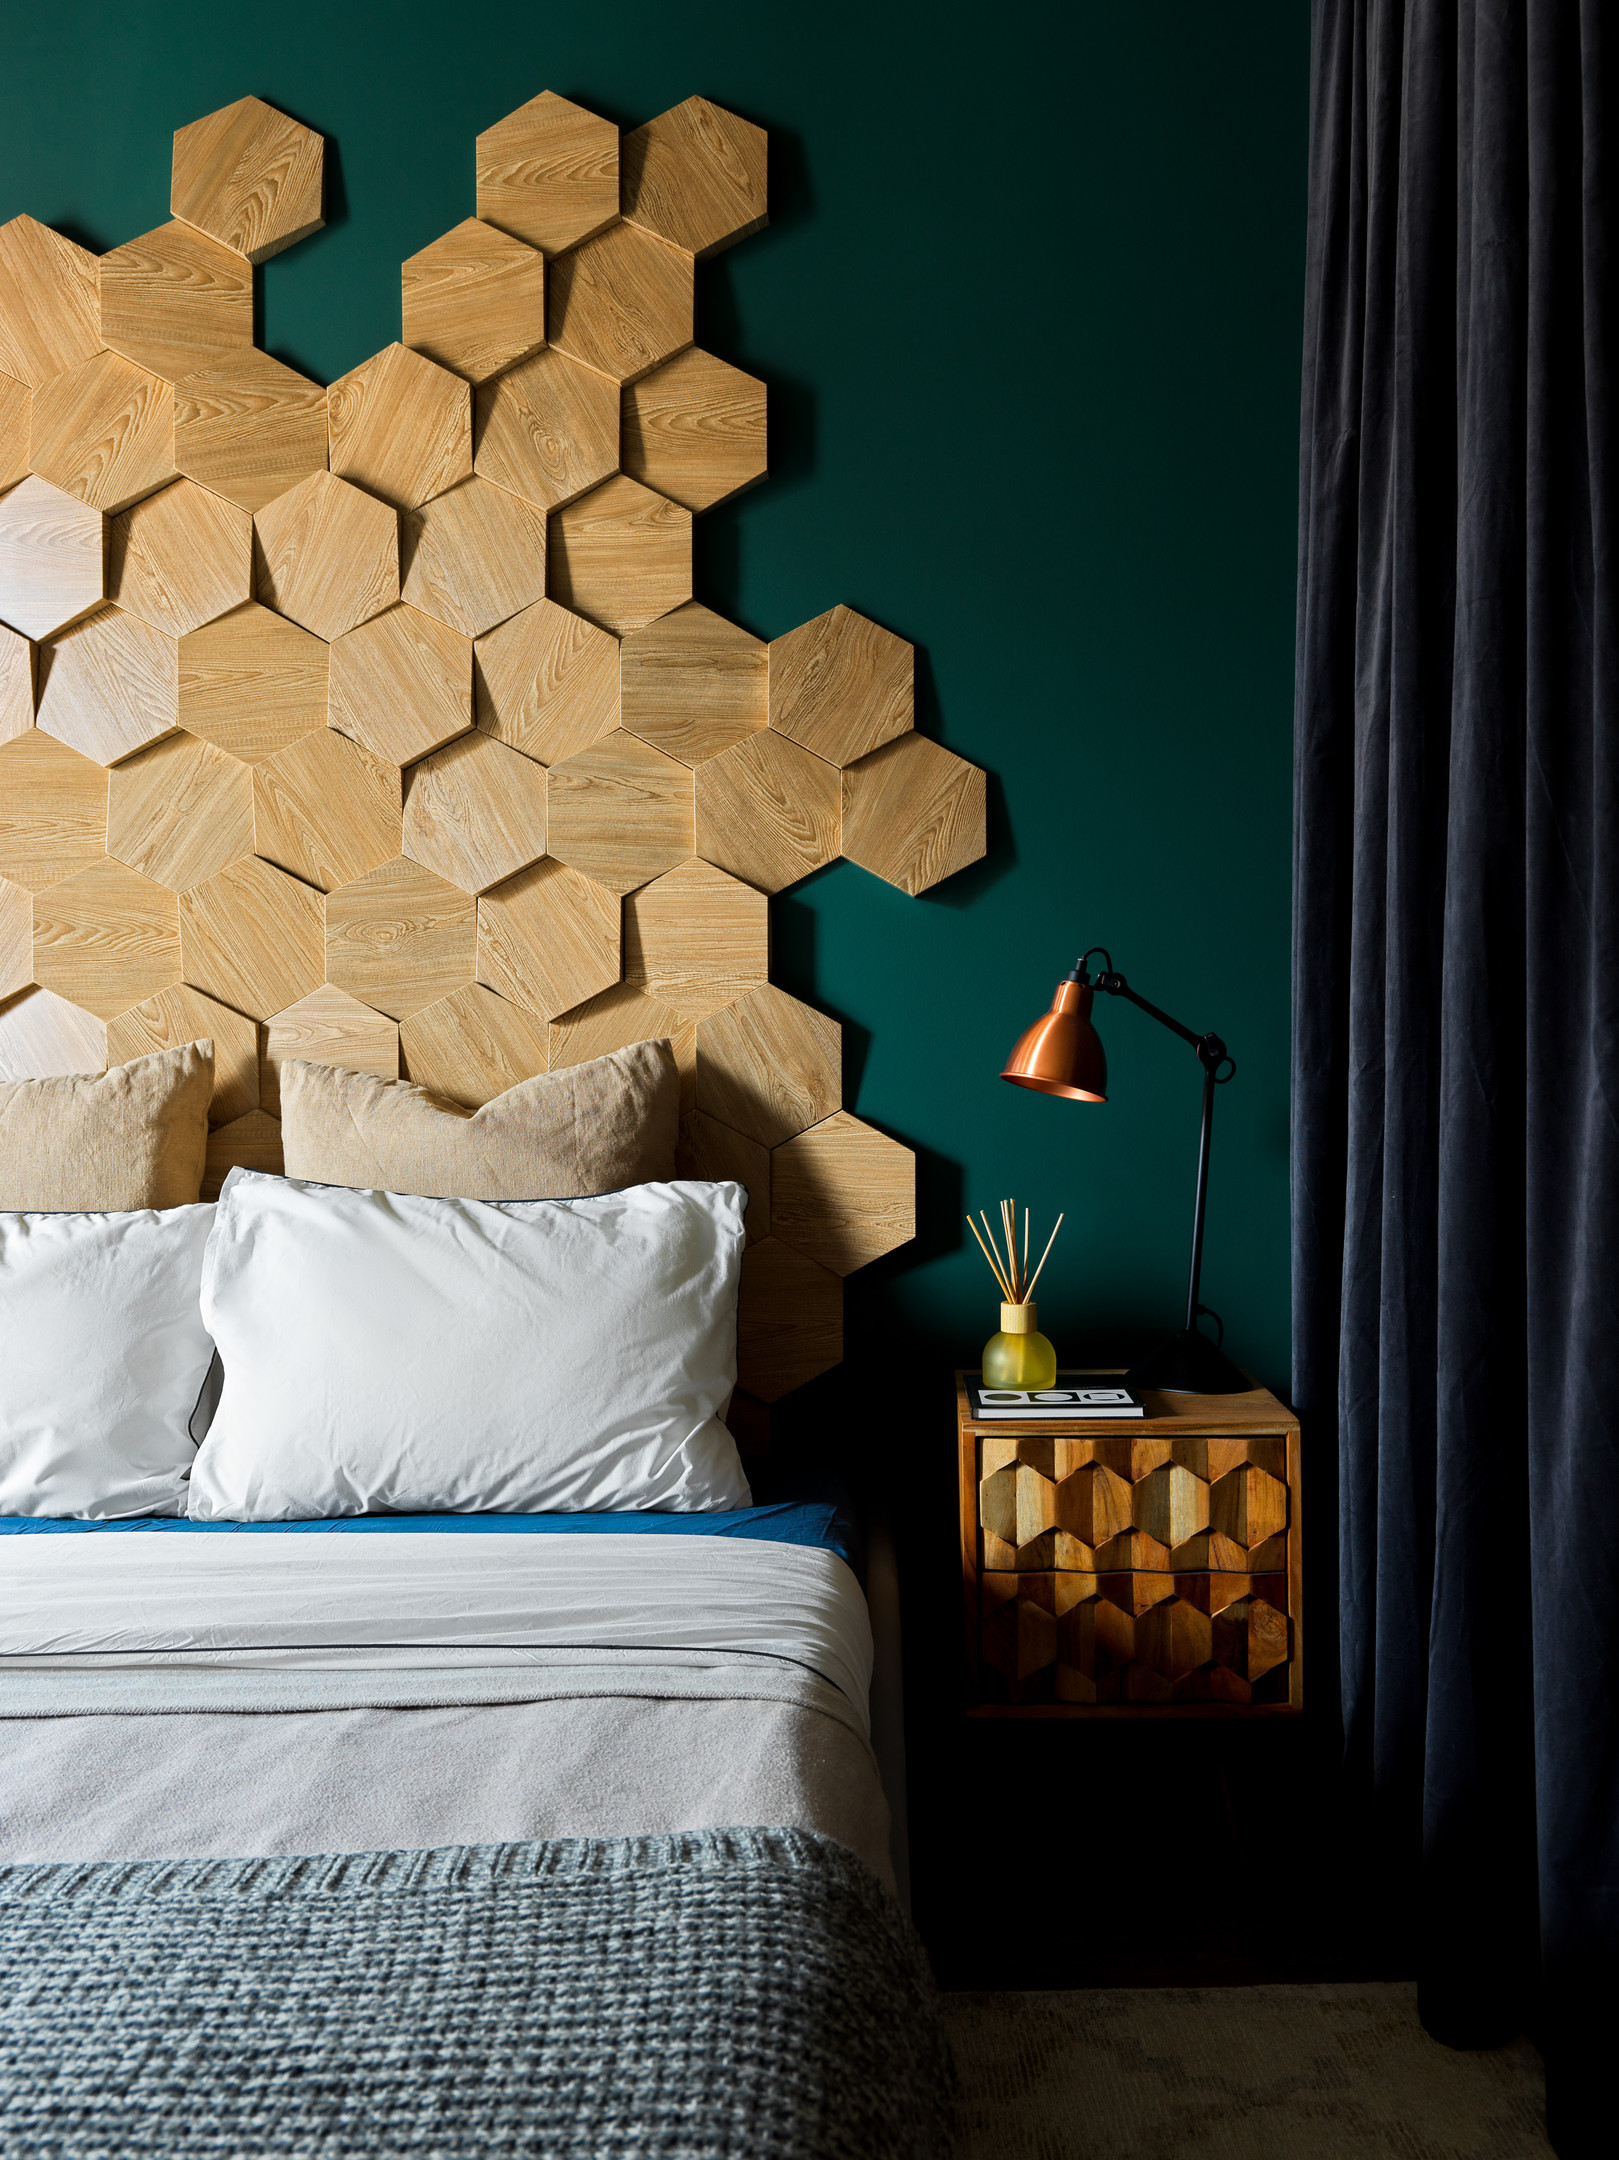 Đầu giường được trang trí bằng những tấm gỗ sáng màu hình lục giác, ghép lại ngẫu hứng thành họa tiết tổ ong bắt mắt. Táp đầu giường lựa chọn thiết kế gắn tường, thêm cả đèn đọc sách tiện lợi.